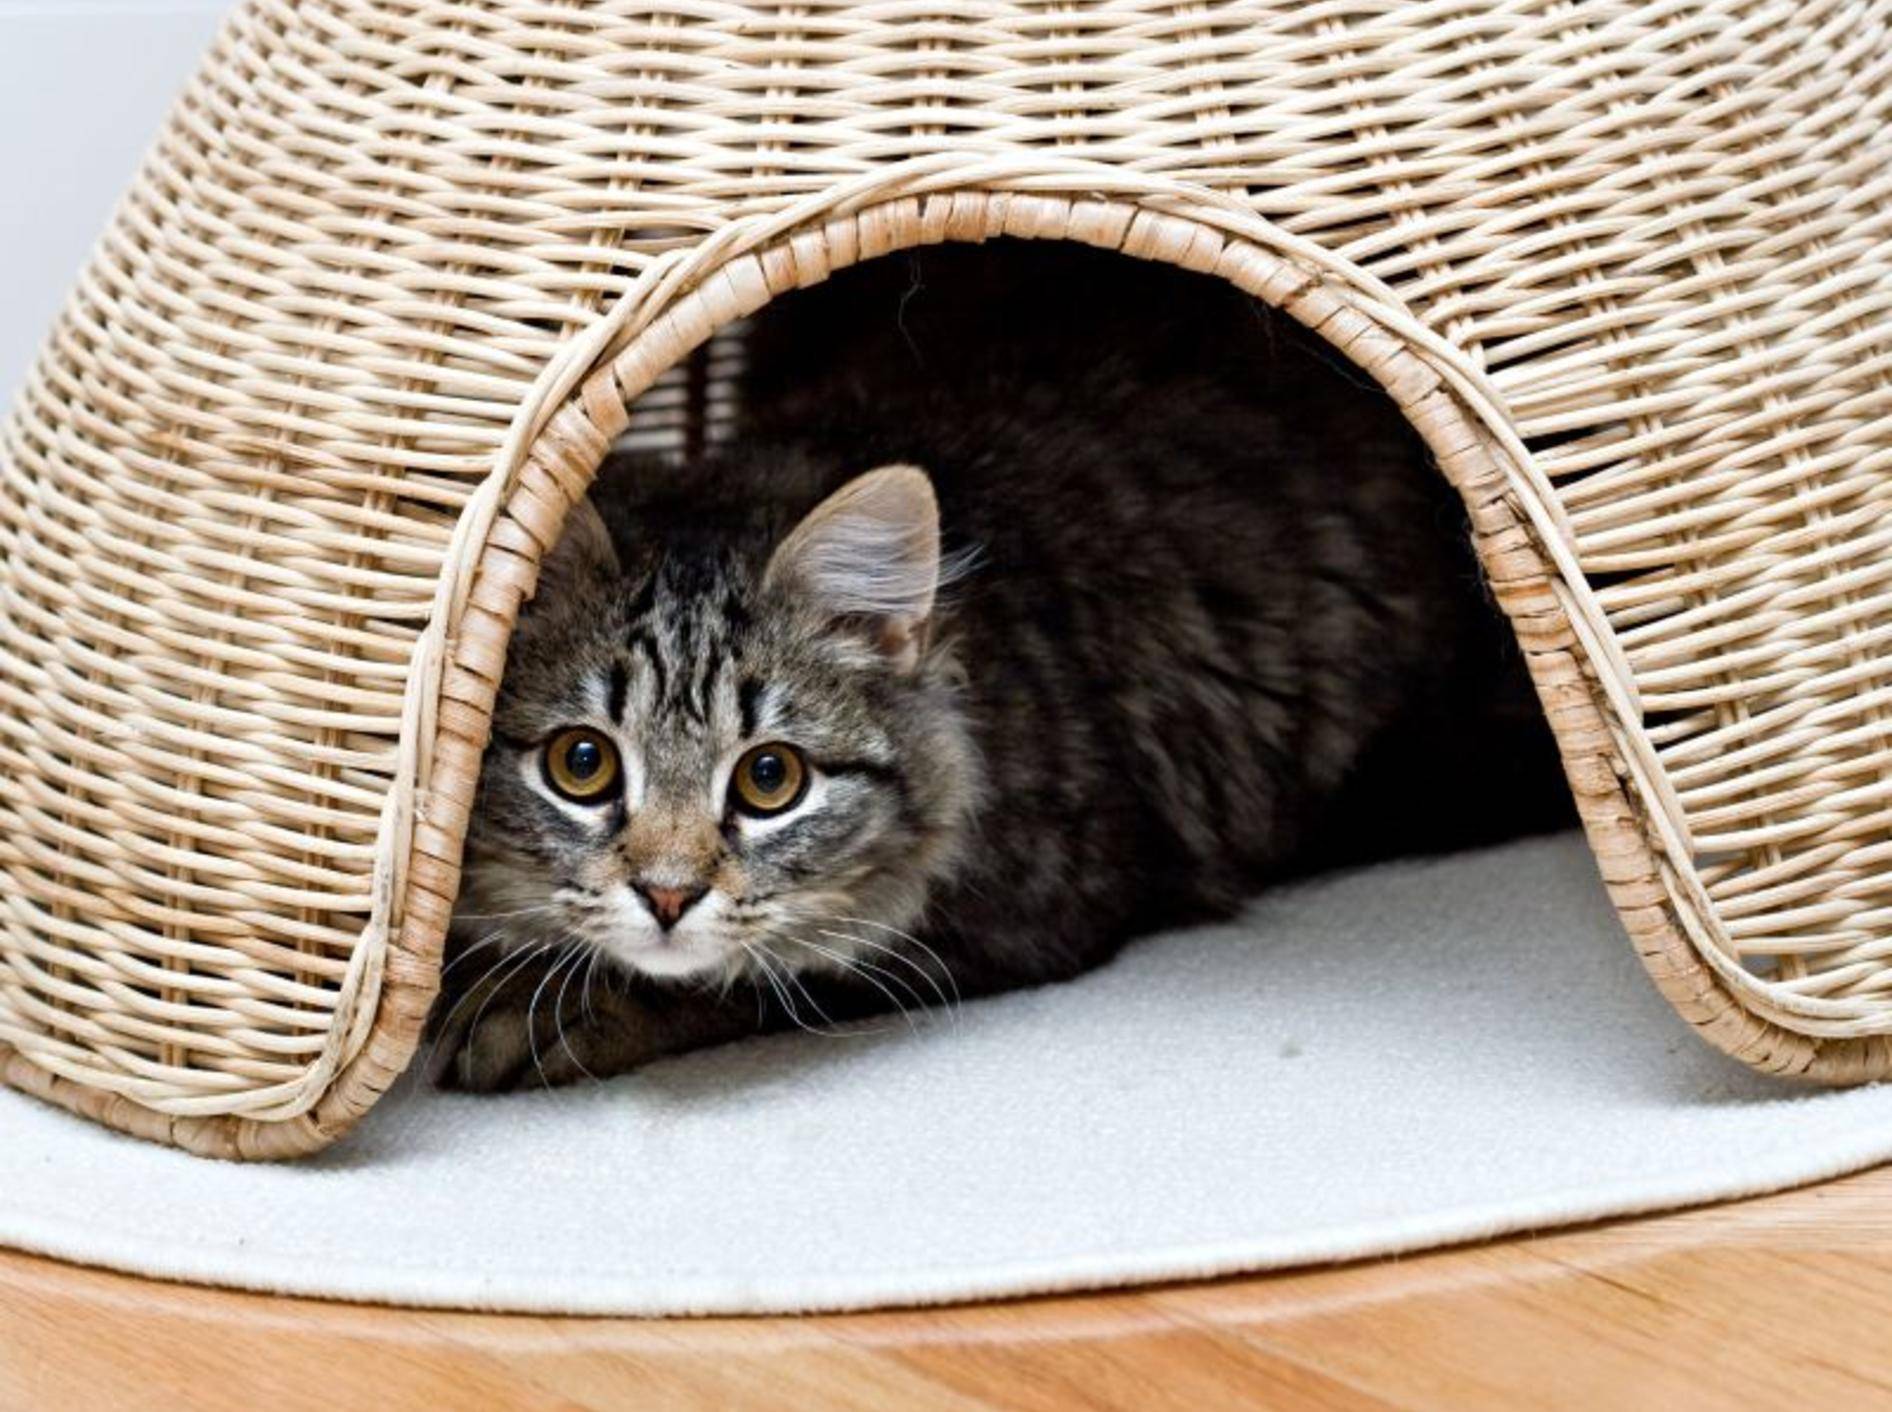 Verstecken macht Spaß: Vier schöne Katzenhöhlen – Bild: Shutterstock / Alon Brik